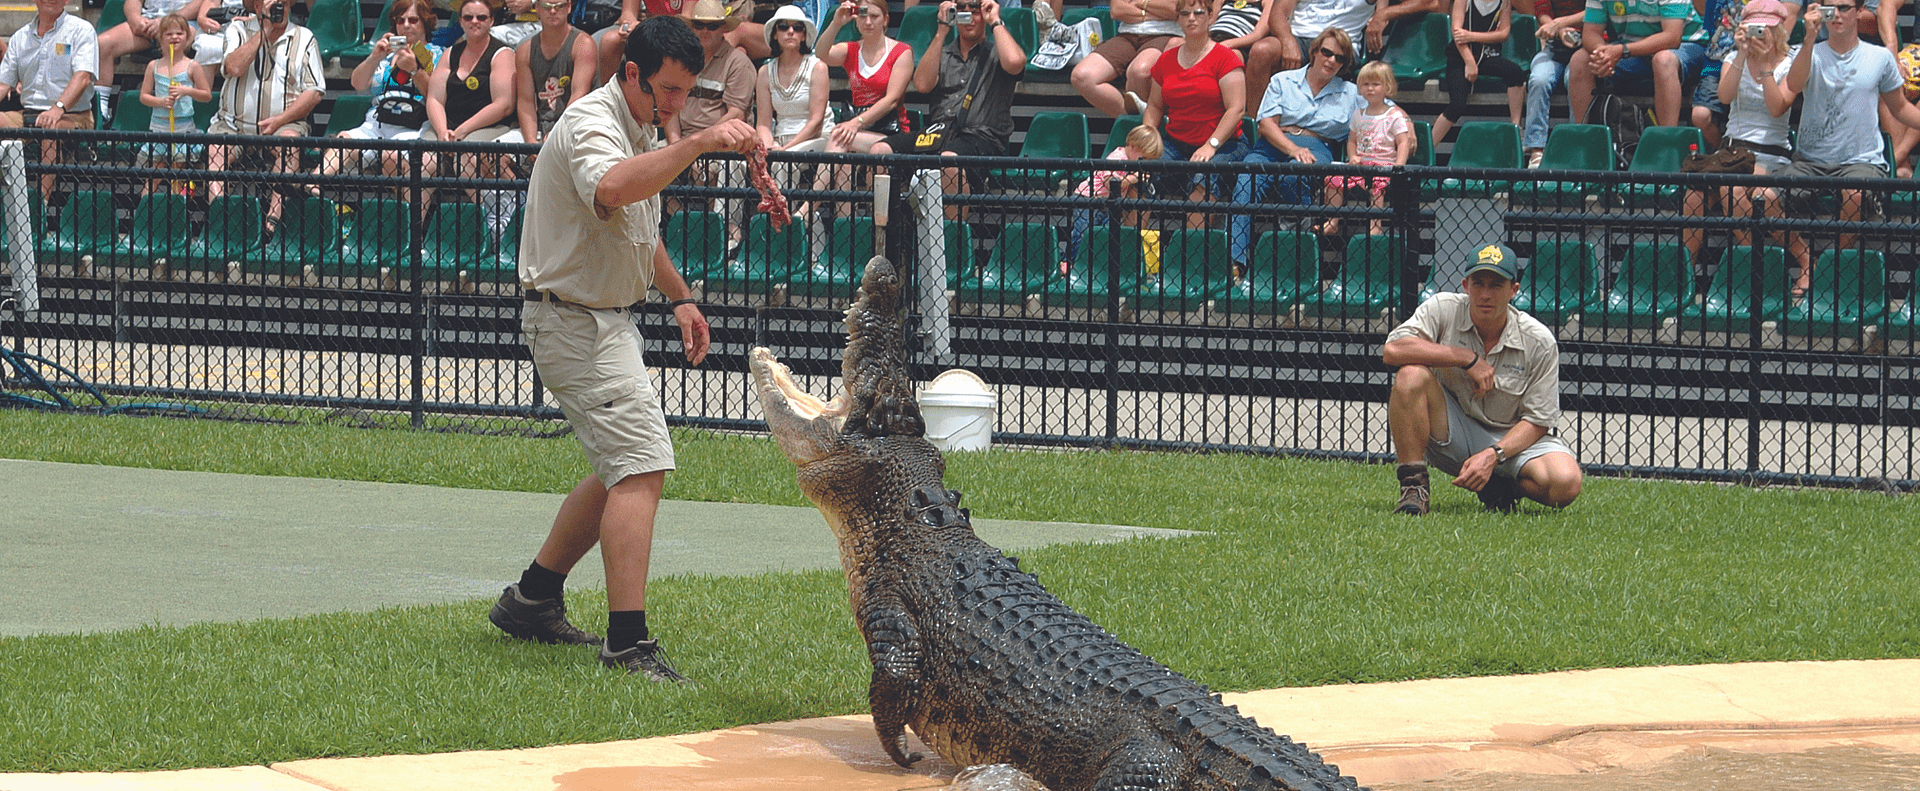 Australia Zoo Crocodile Show